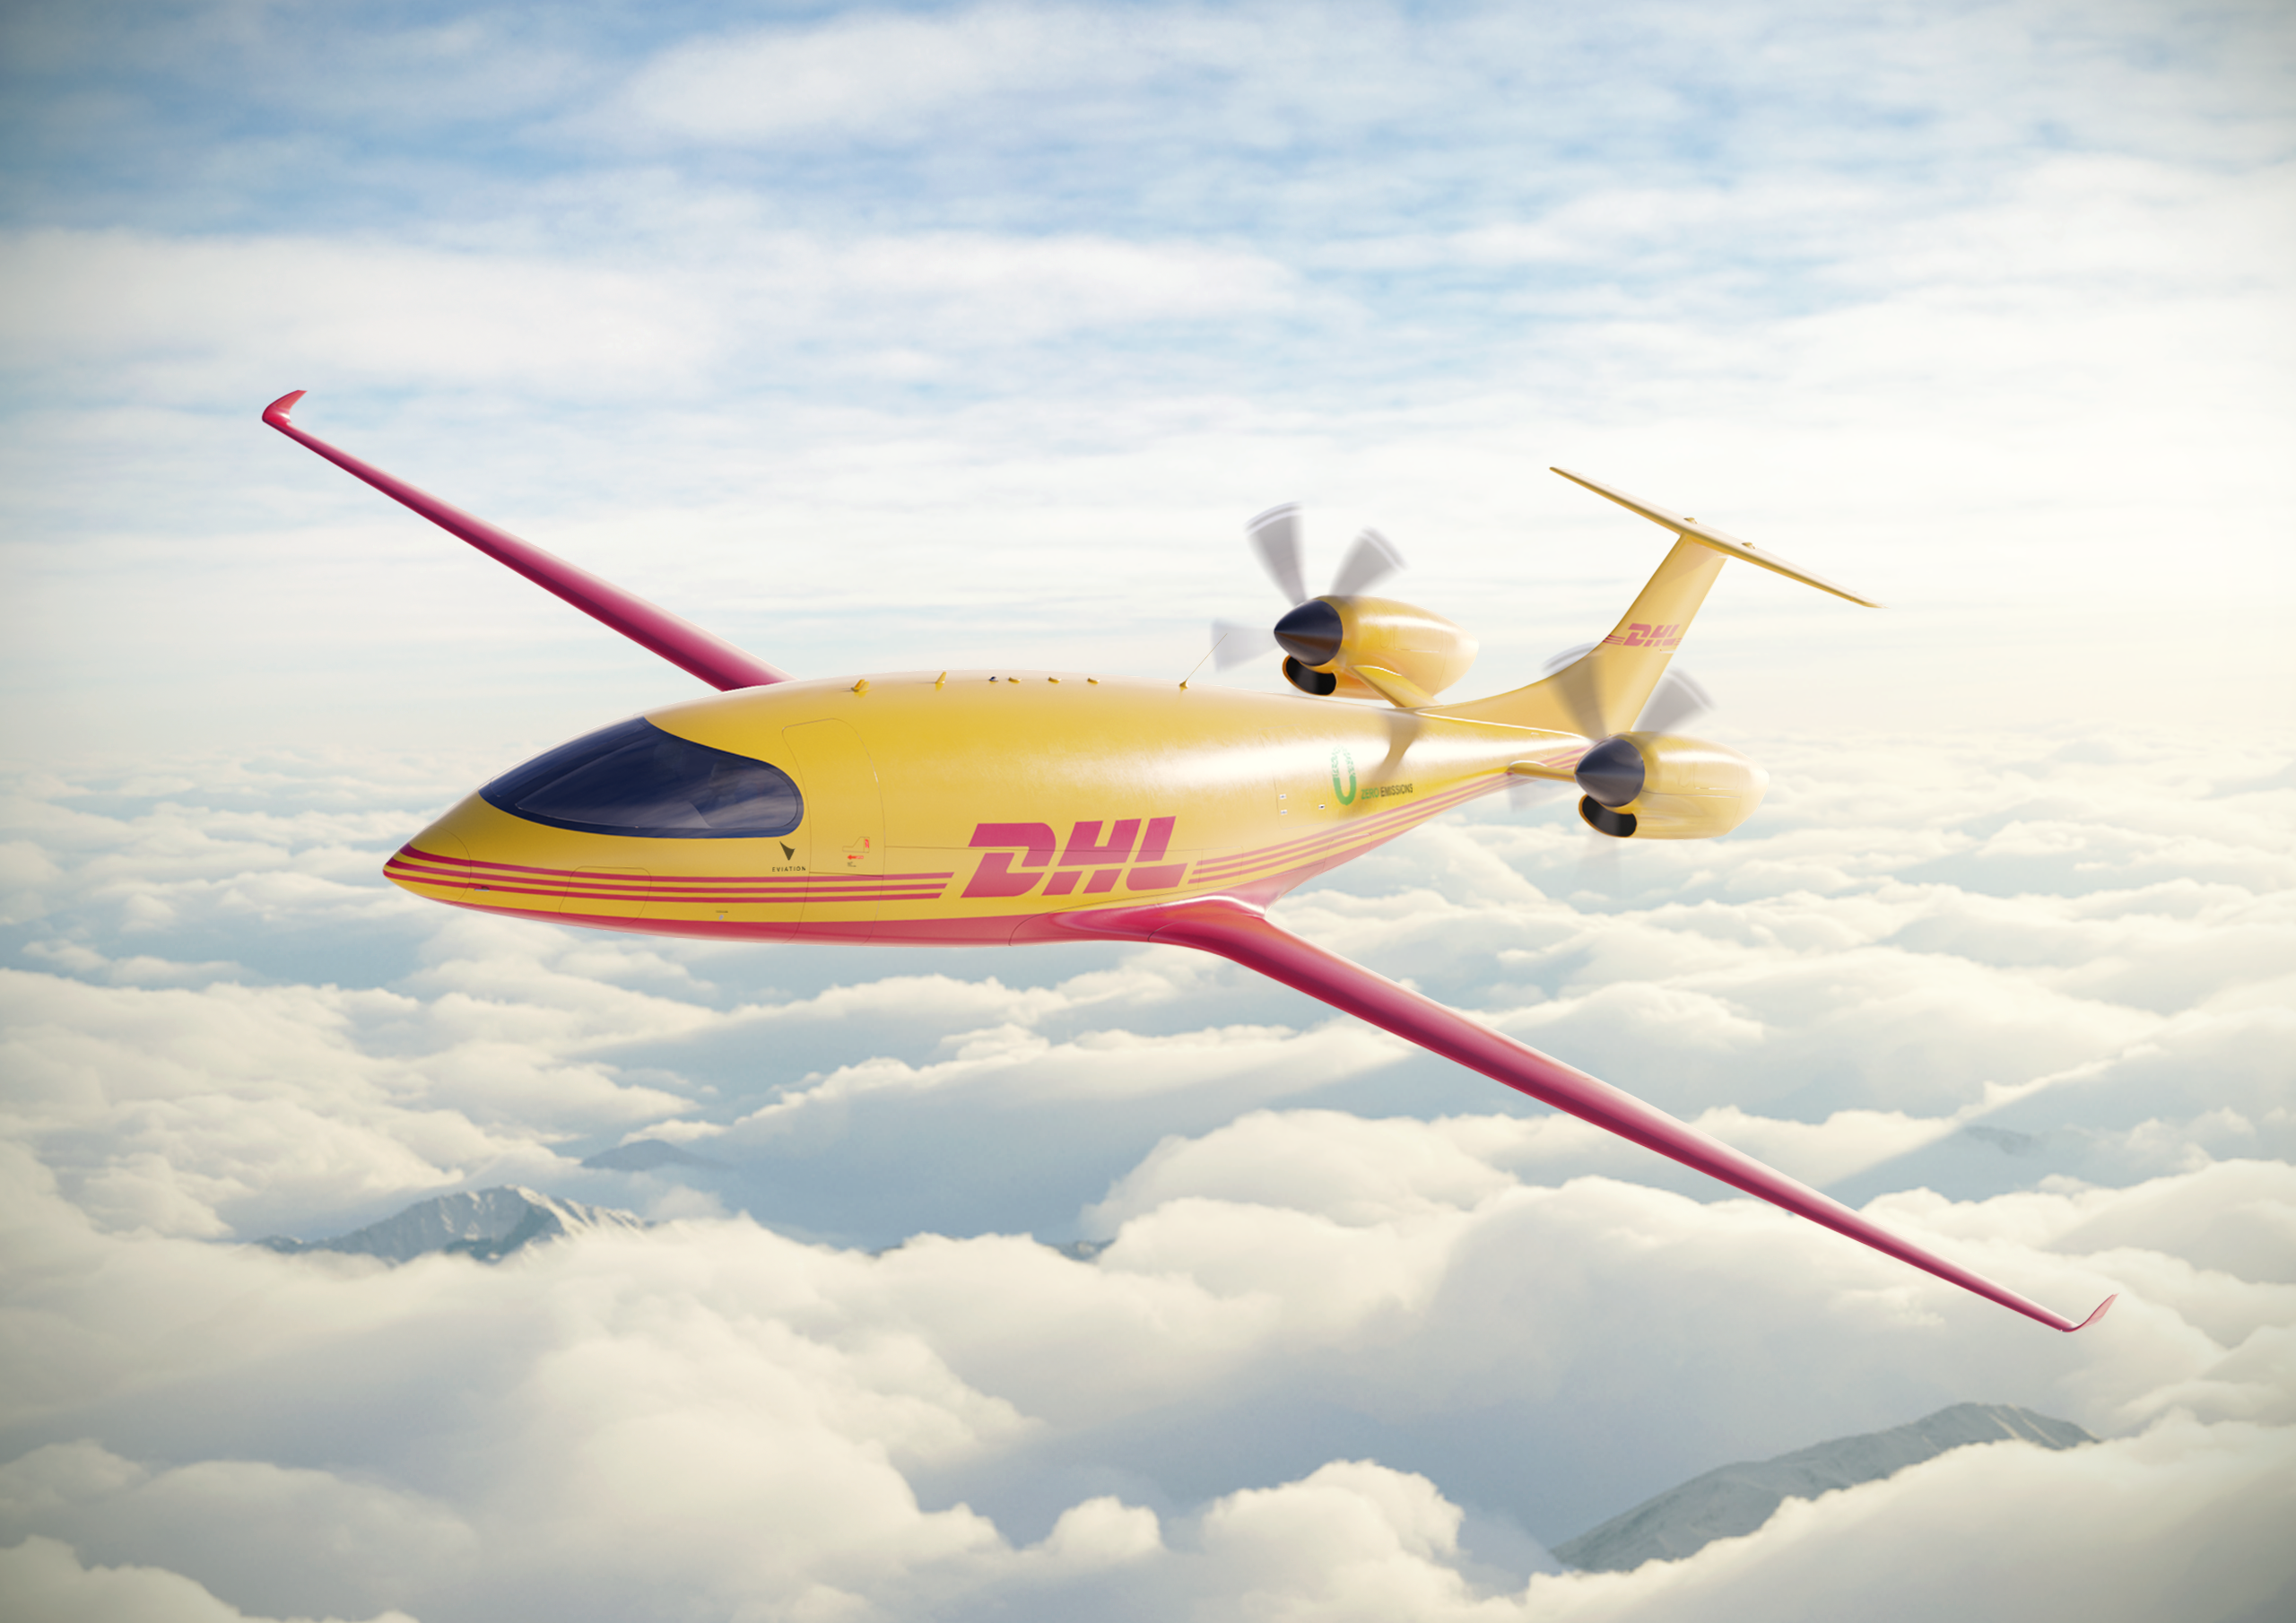 DHL Express บุกเบิกการบินอย่างยั่งยืน ร่วมมือกับ Eviation สั่งซื้อเครื่องบินไฟฟ้าเพื่อการขนส่งสินค้าครั้งแรกในโลก